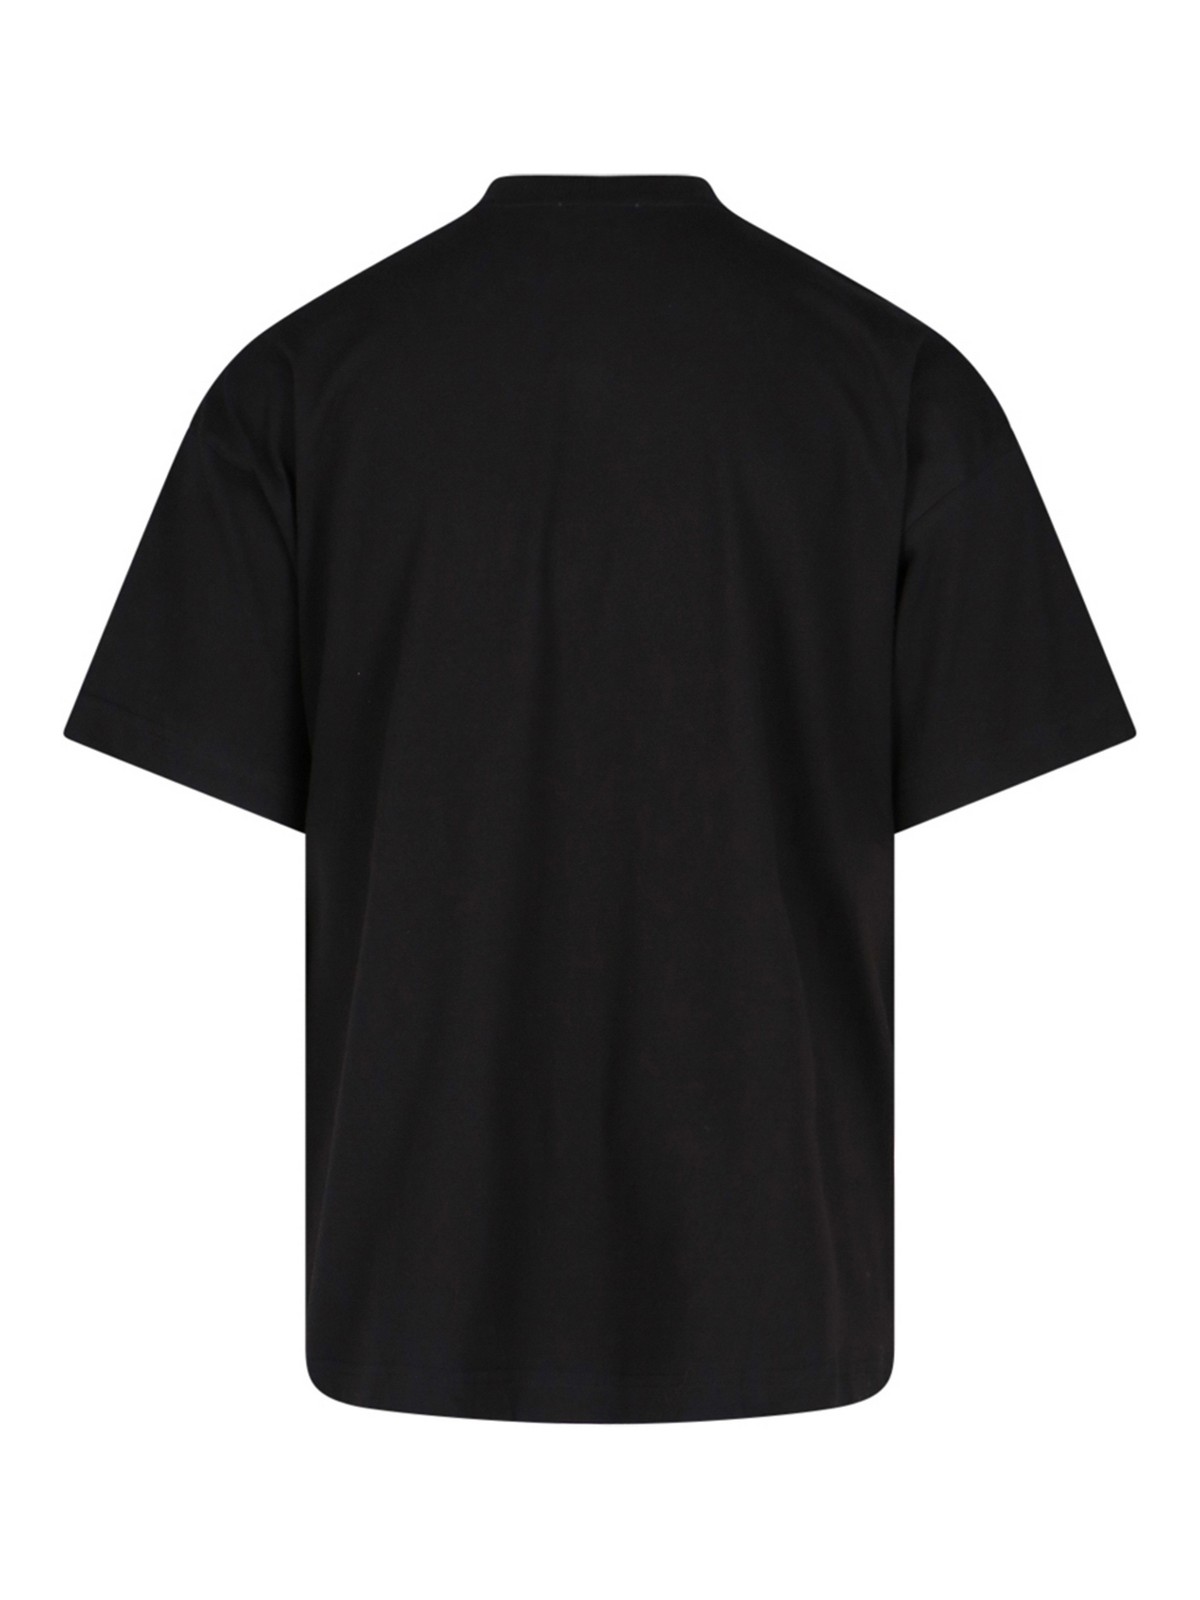 Shop Blue Sky Inn Camiseta - Negro In Black